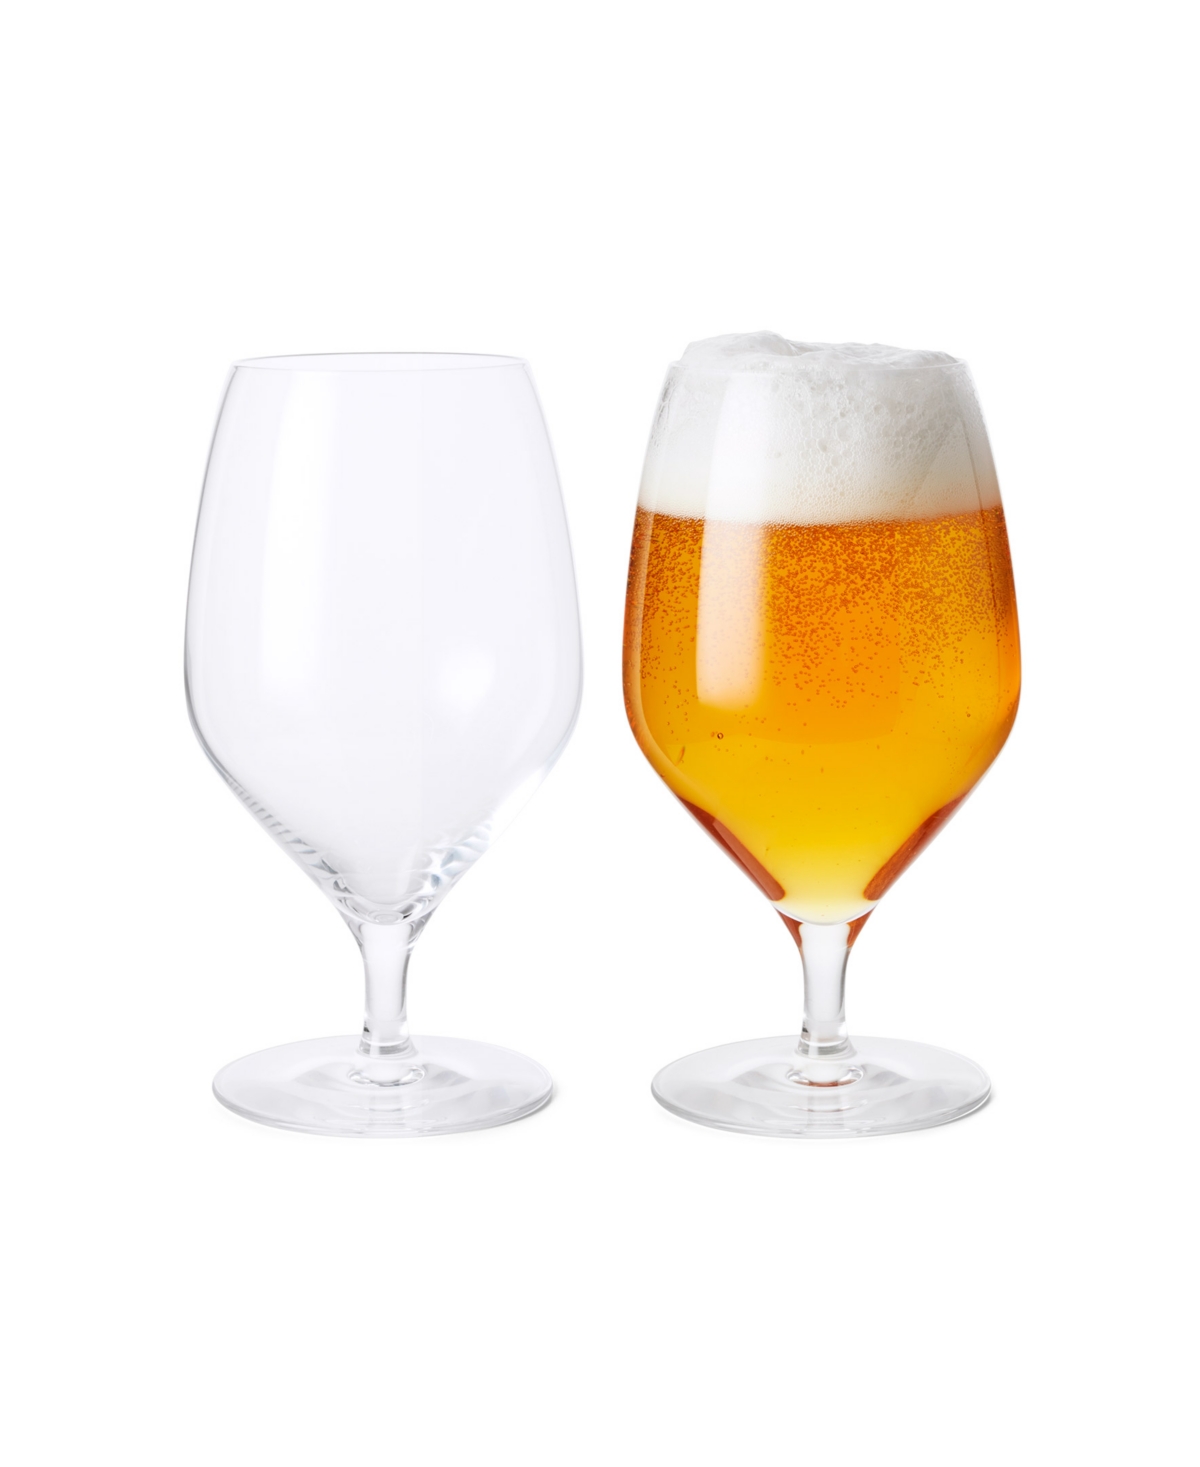 Rosendahl 20.03 oz Beer Glasses, Set Of 2 In Clear